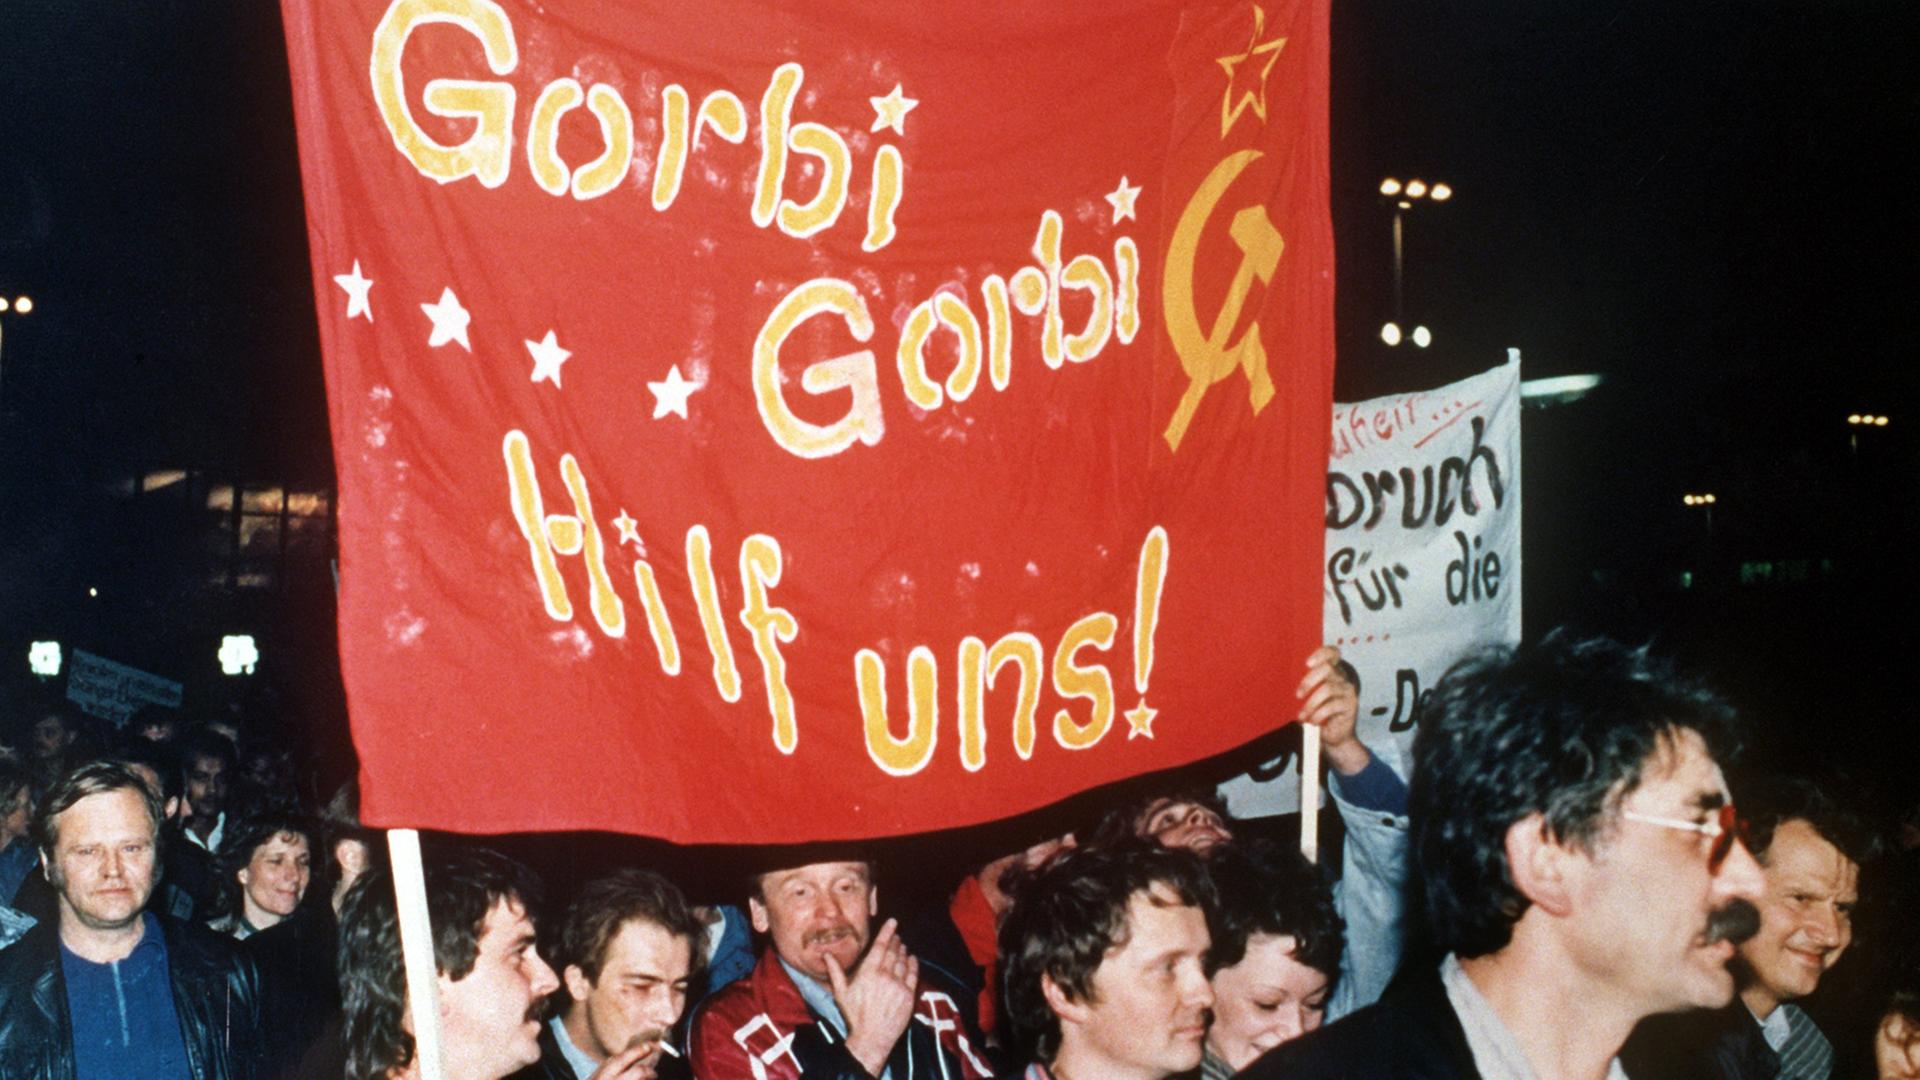 Demonstranten mit einem roten Transparent auf dem "Gorbi Gorbi Hilf uns!"